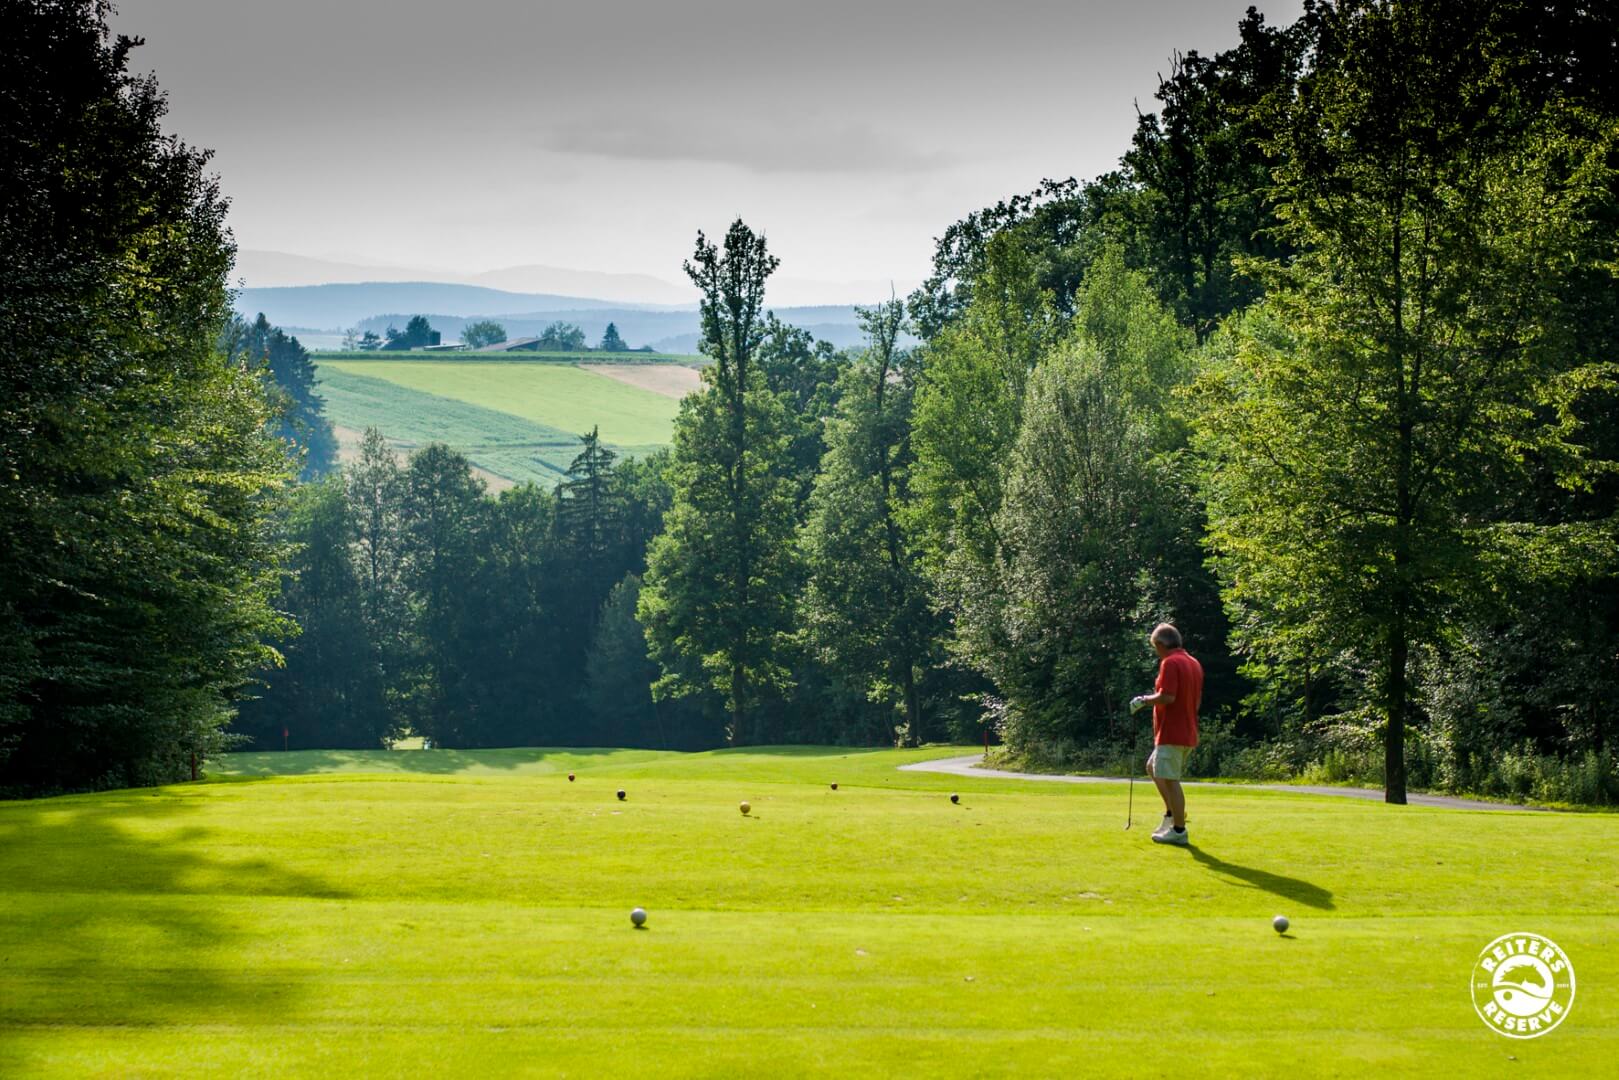 Ein Golfer in rotem Shirt bereitet sich auf dem Abschlagplatz vor, umgeben von dichtem Wald und einer hügeligen Landschaft.